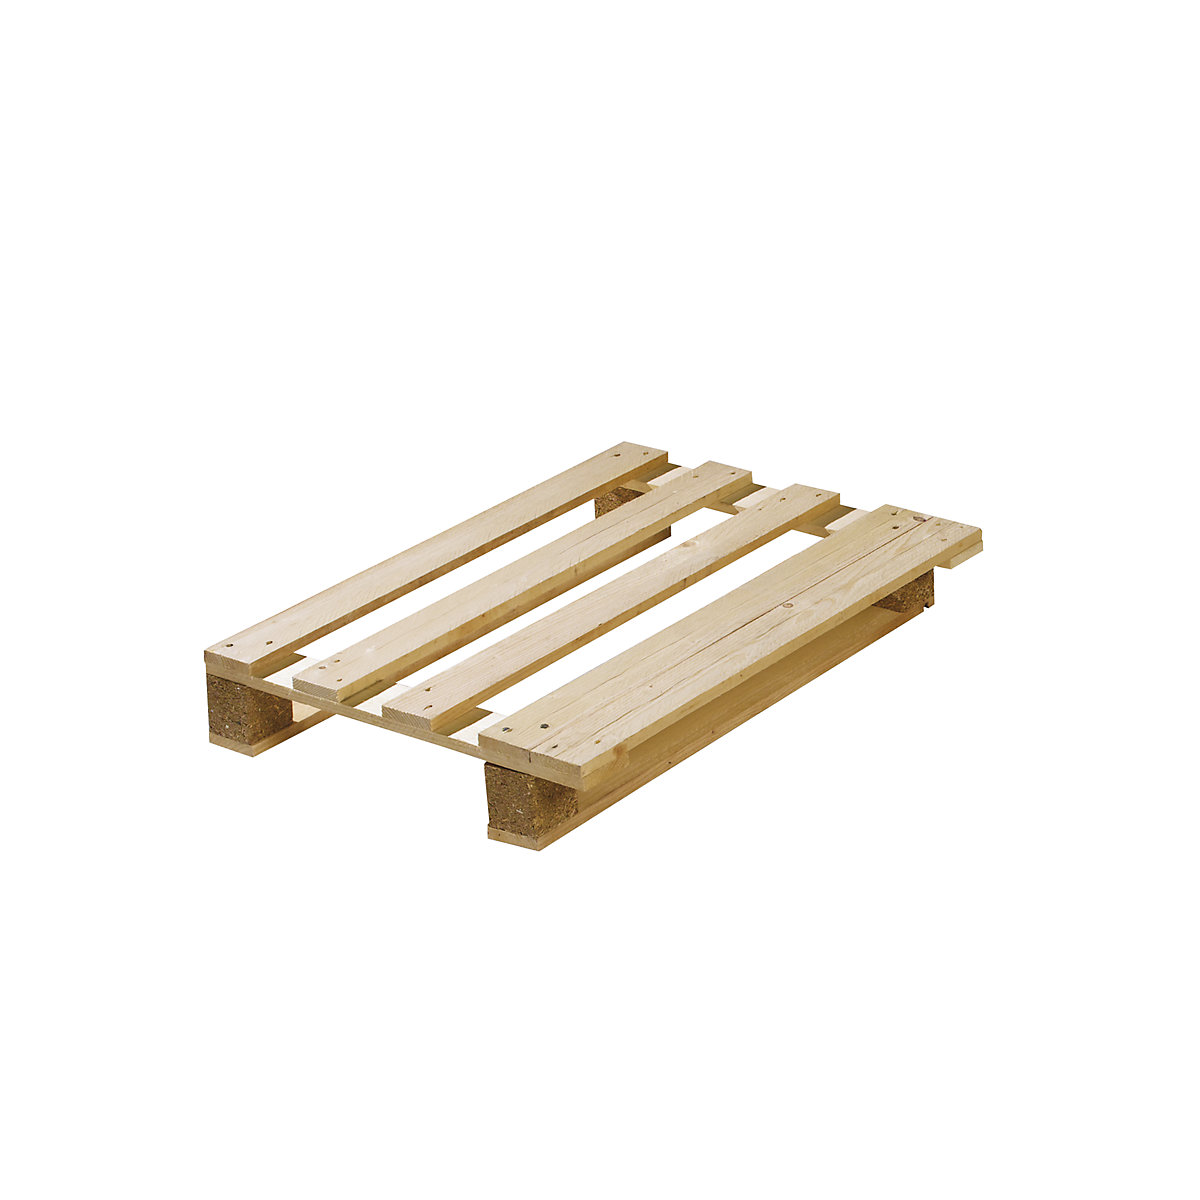 Ijsbeer oven instructeur Halfformaat houten pallet, VE = 10 stuks: behandeld conform ISPM 15 |  KAISER+KRAFT